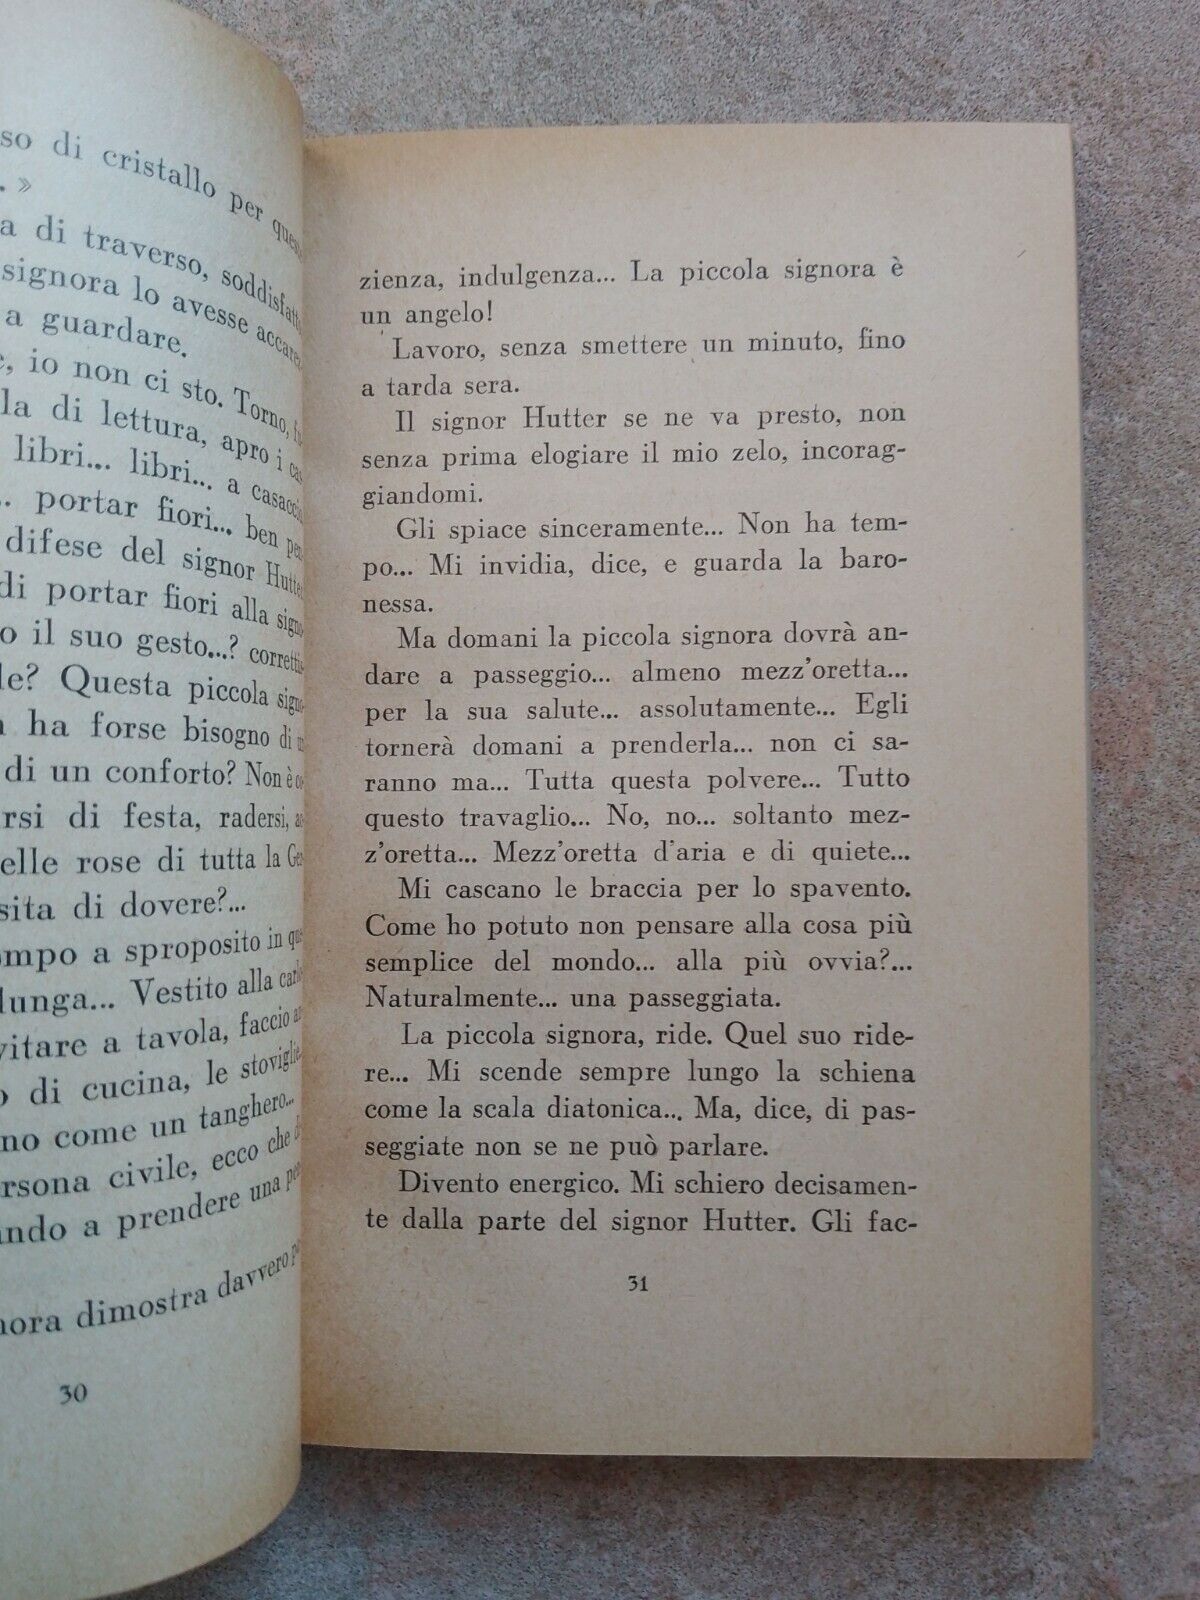 Un Amore Stravagante, H. Johst, Frassinelli, 1943